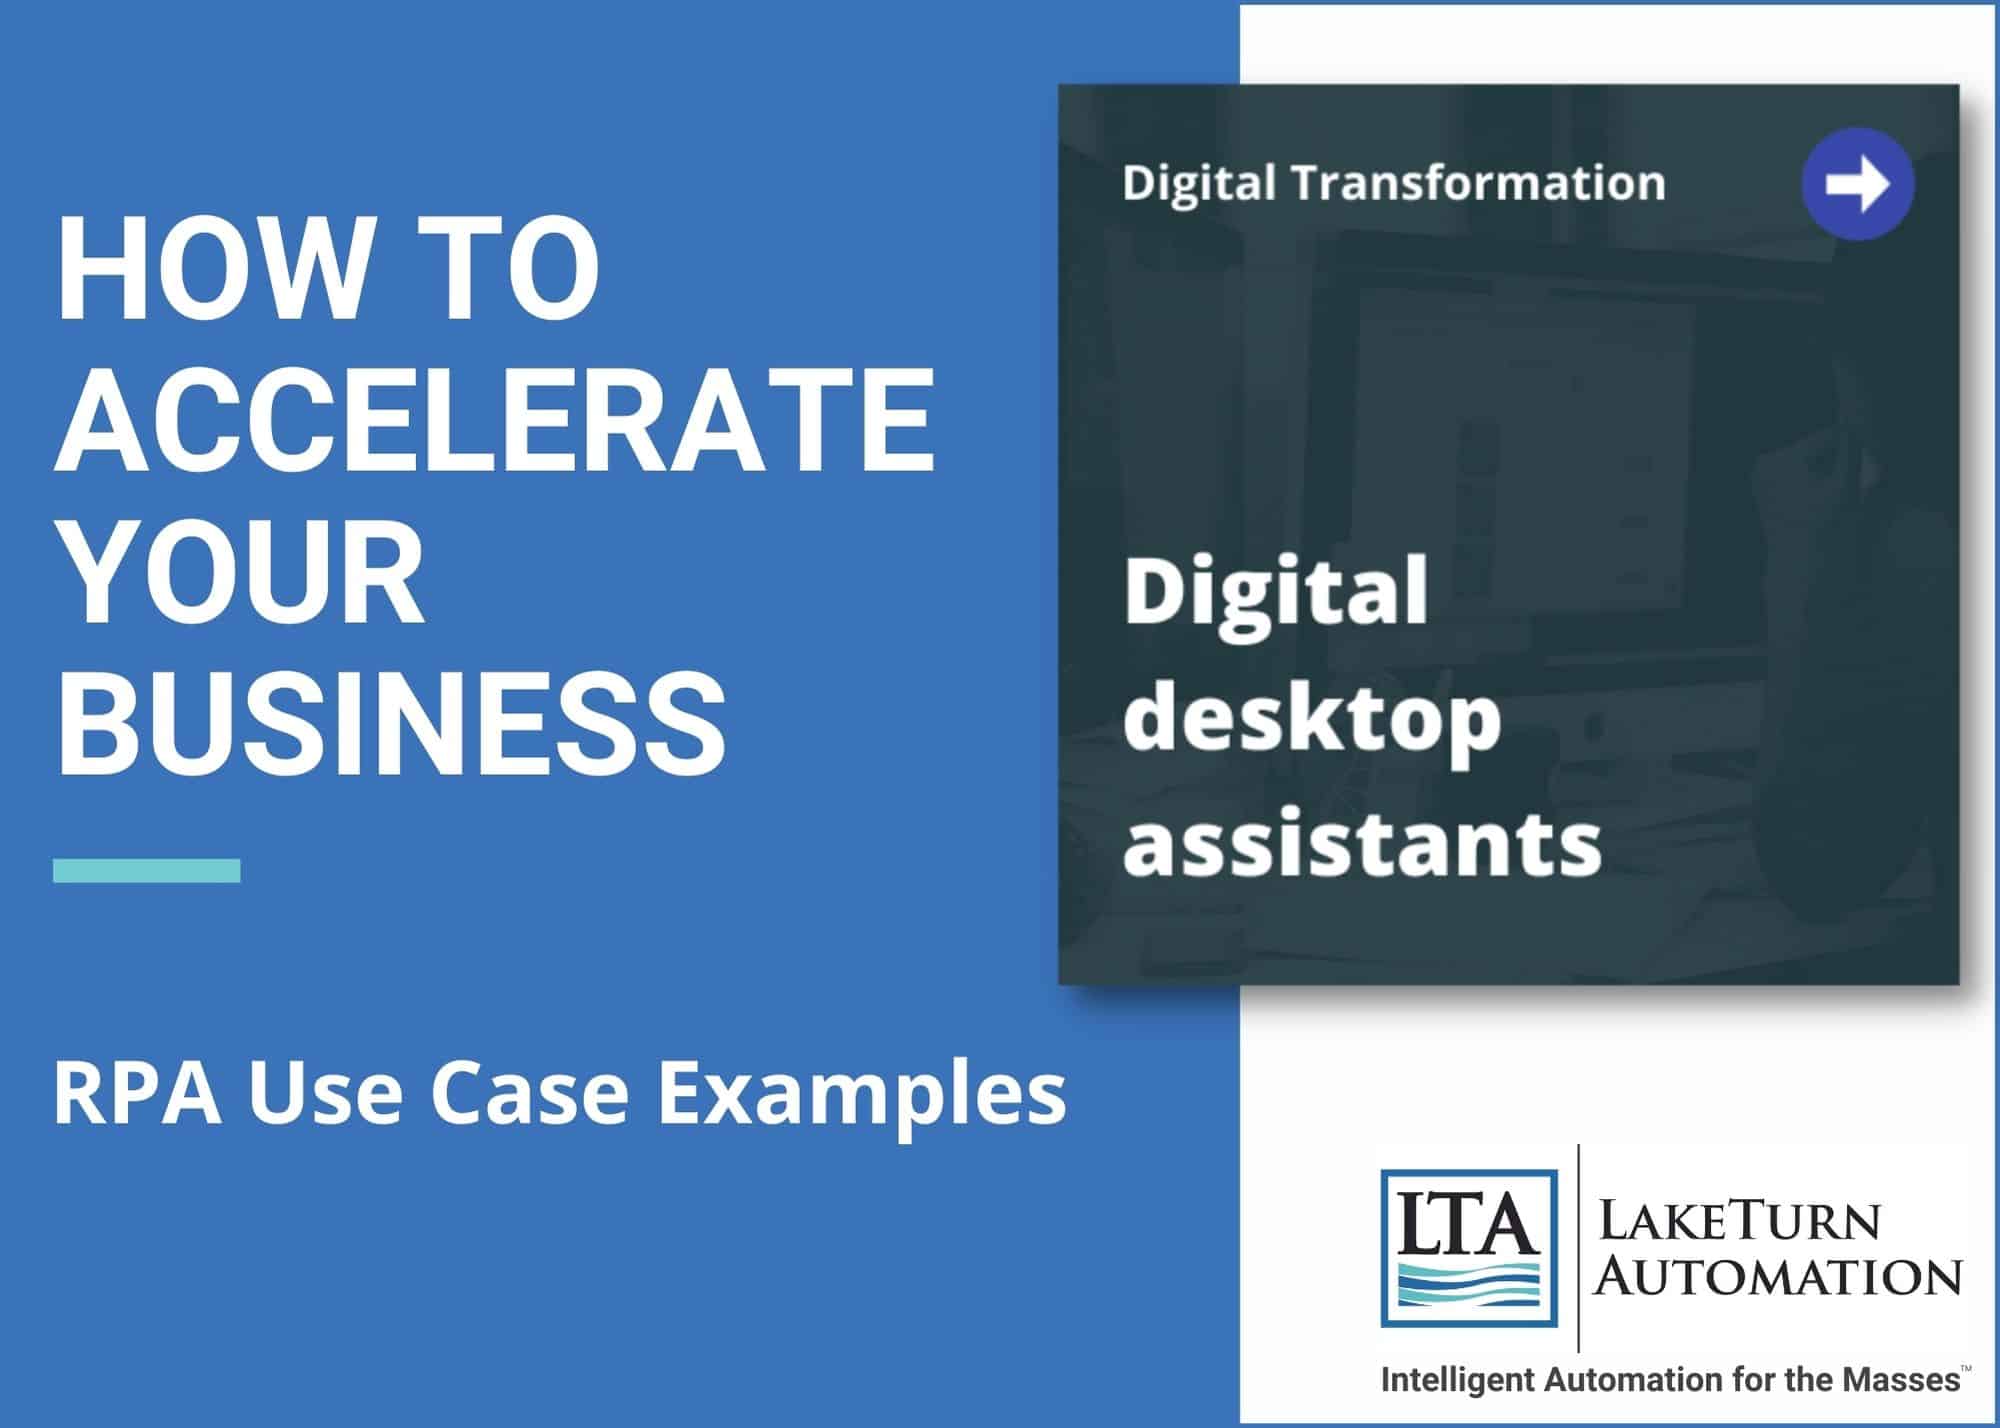 Use Case for Digital Desktop Assistants